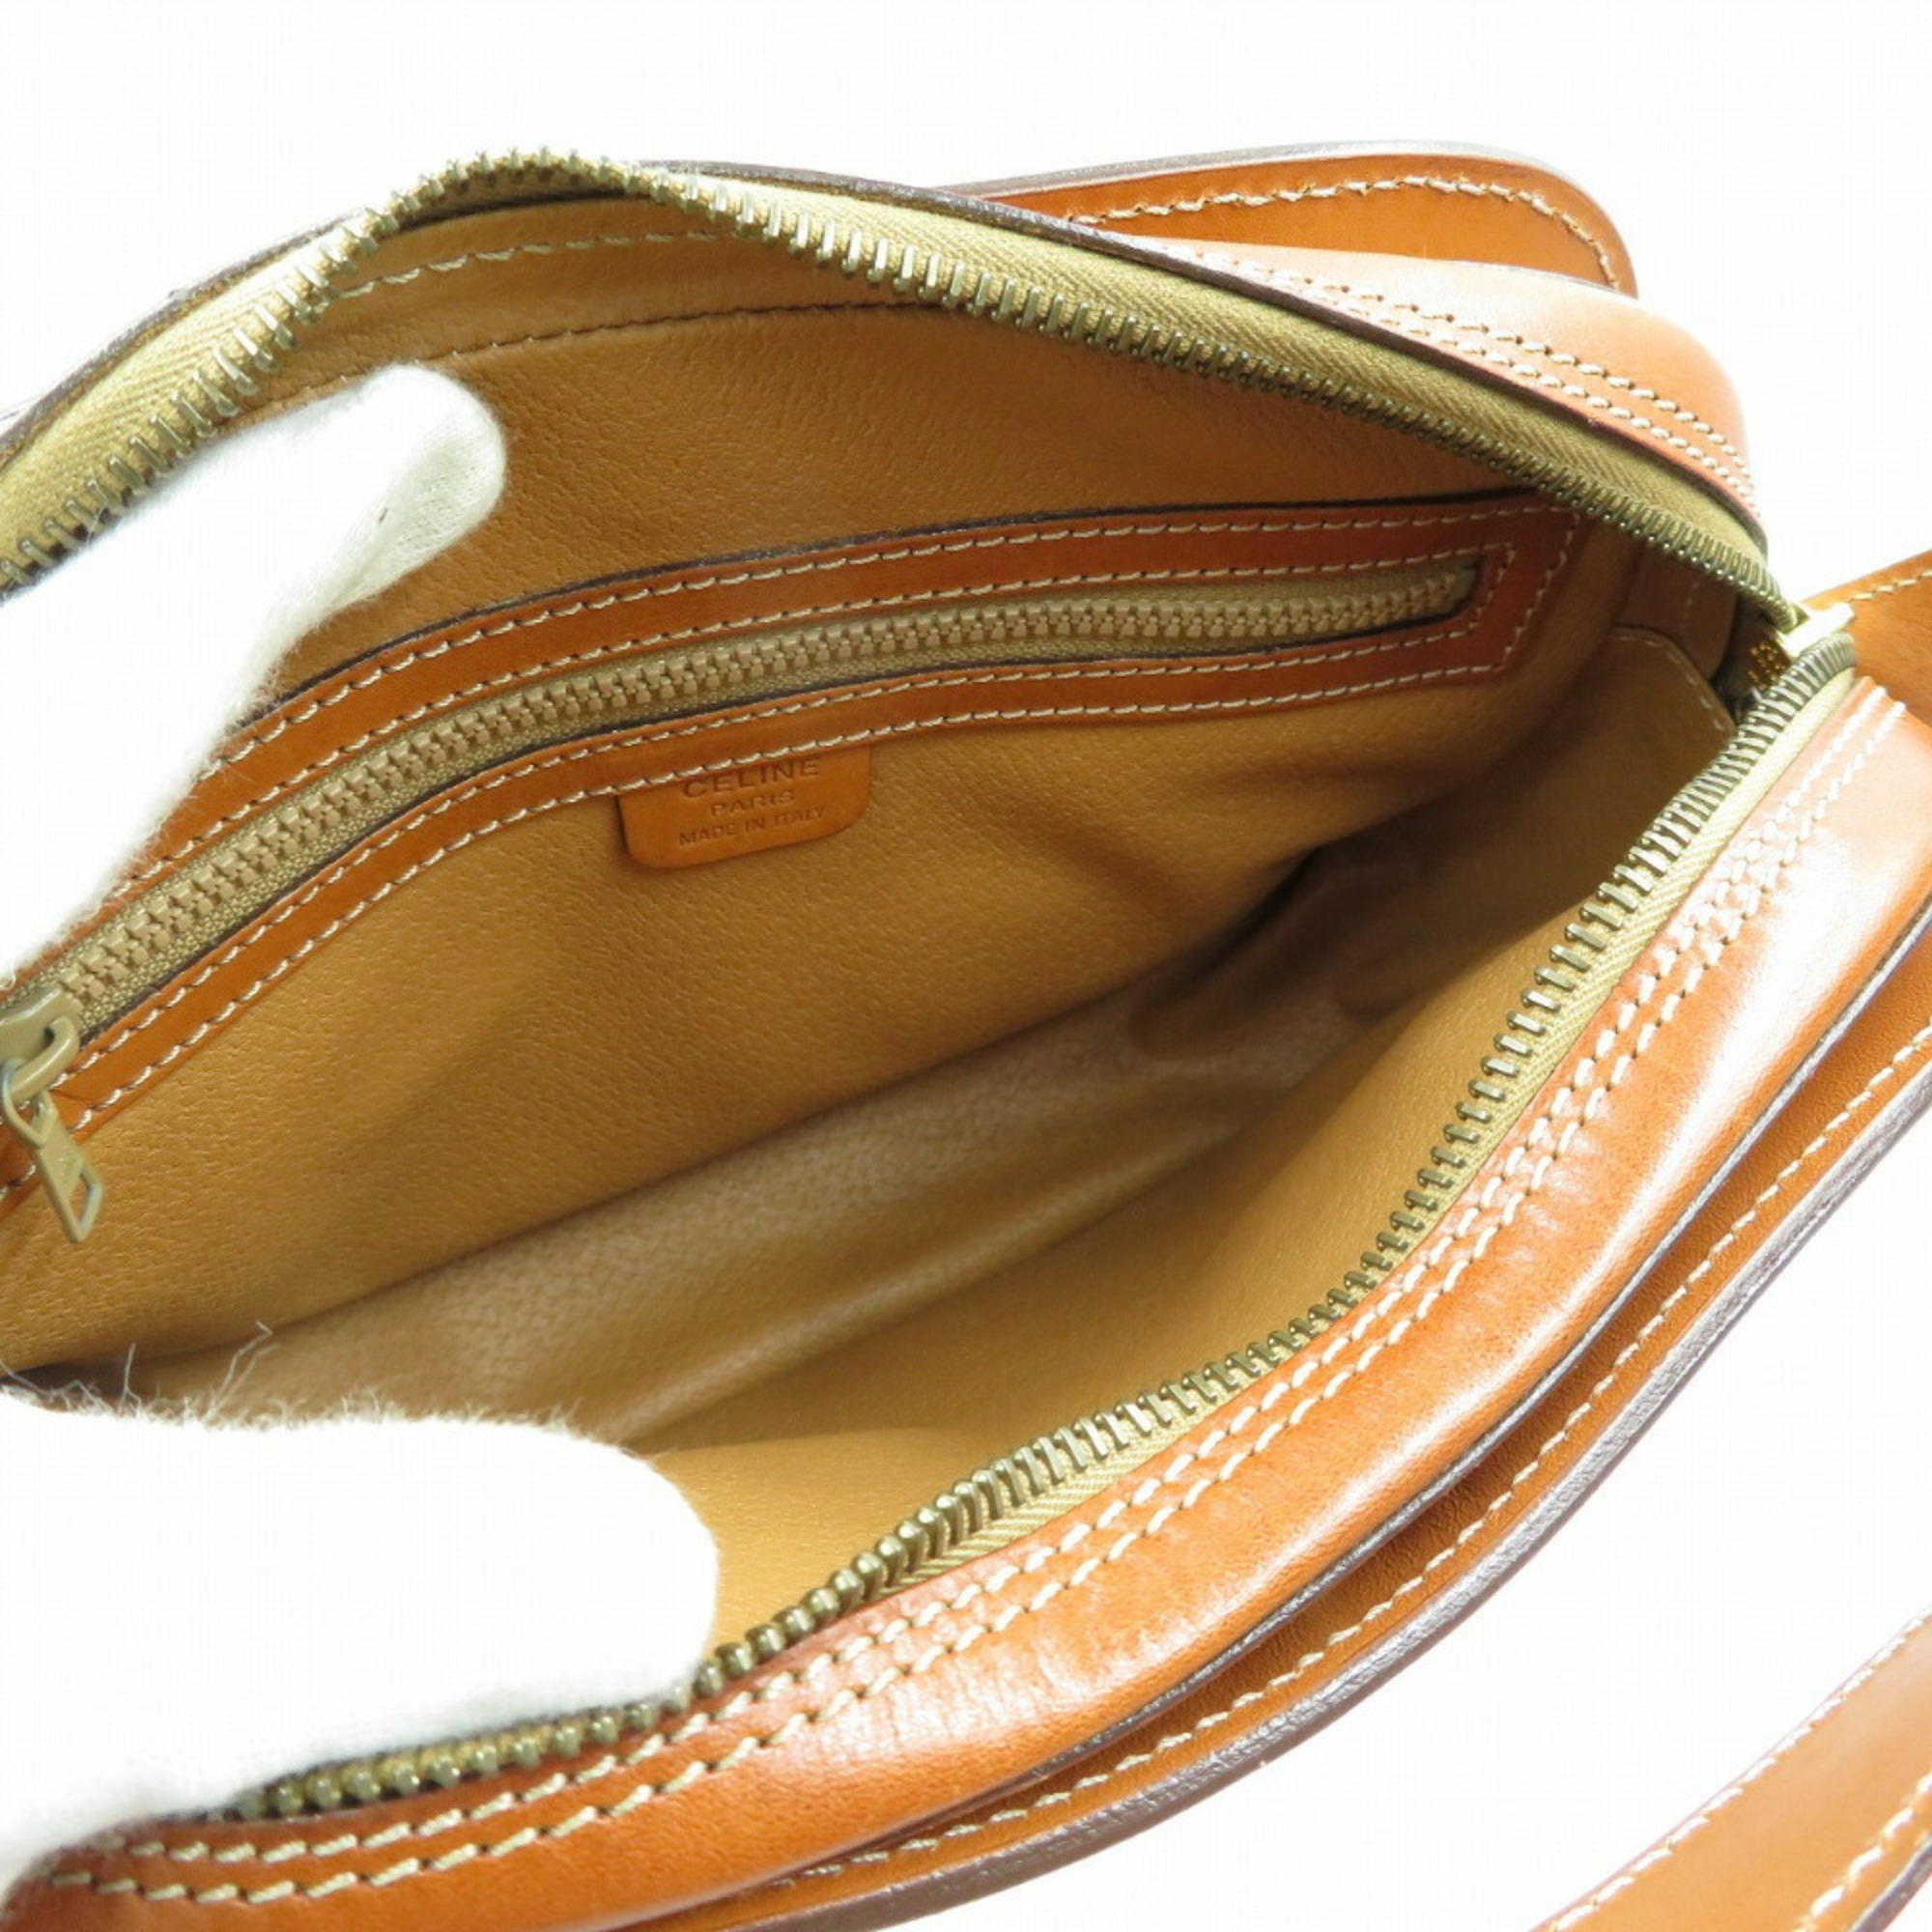 Celine Macadam PVC Leather Brown Shoulder Bag CELINE